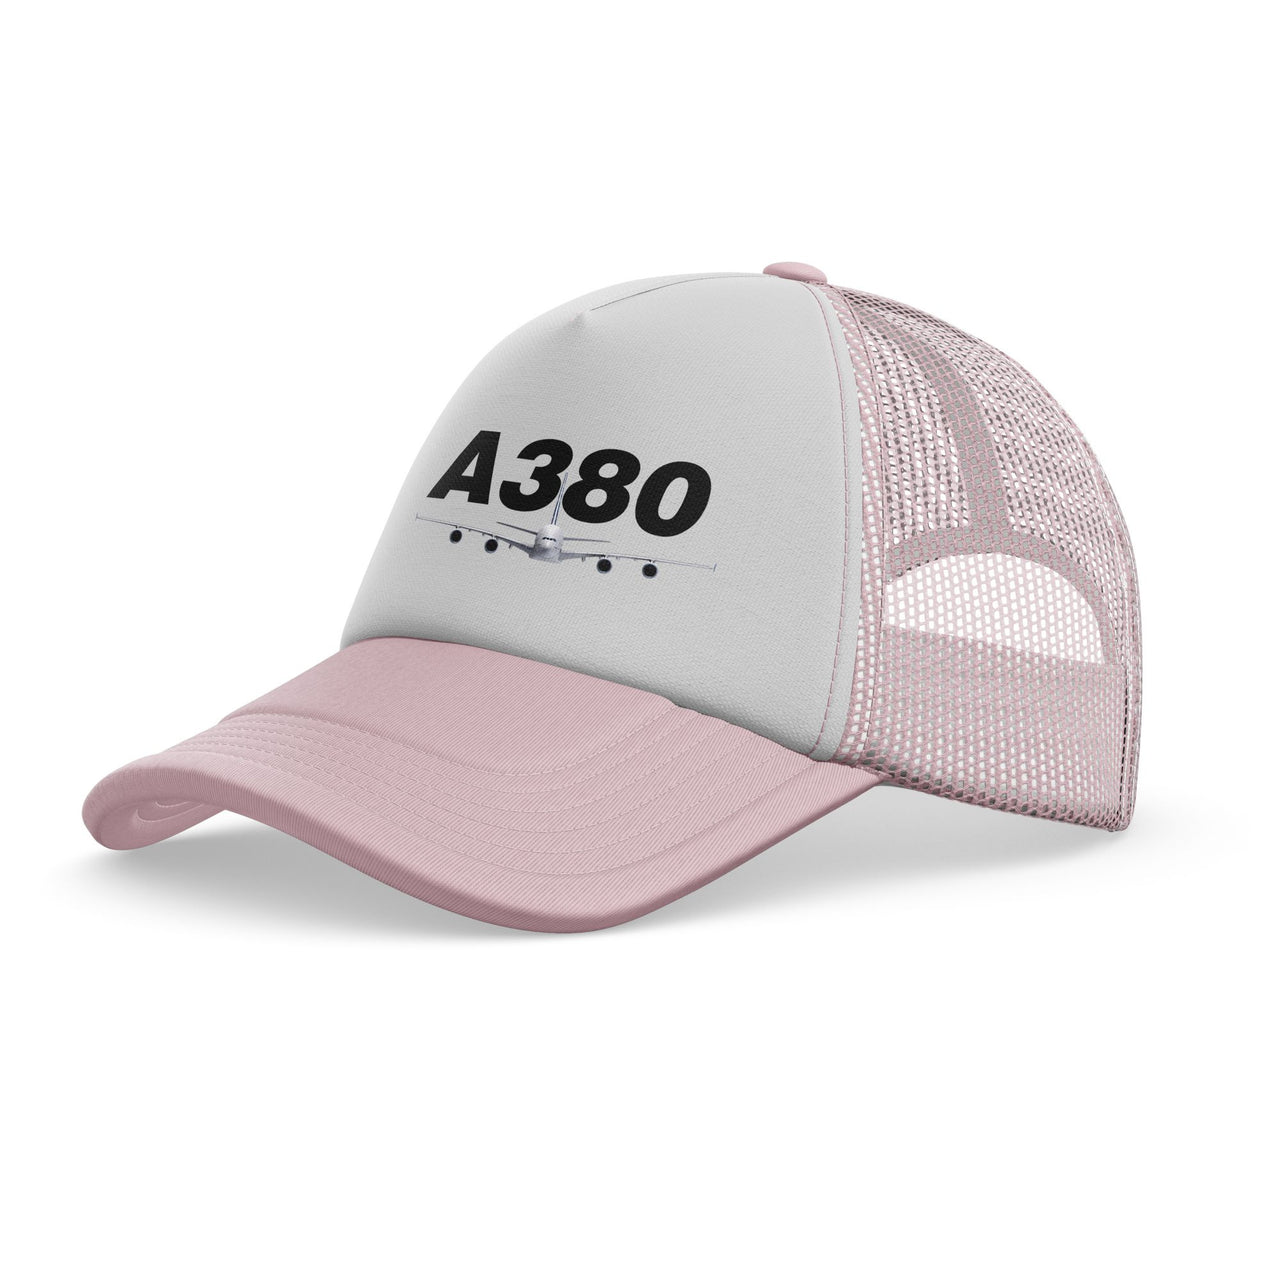 Super Airbus A380 Designed Trucker Caps & Hats